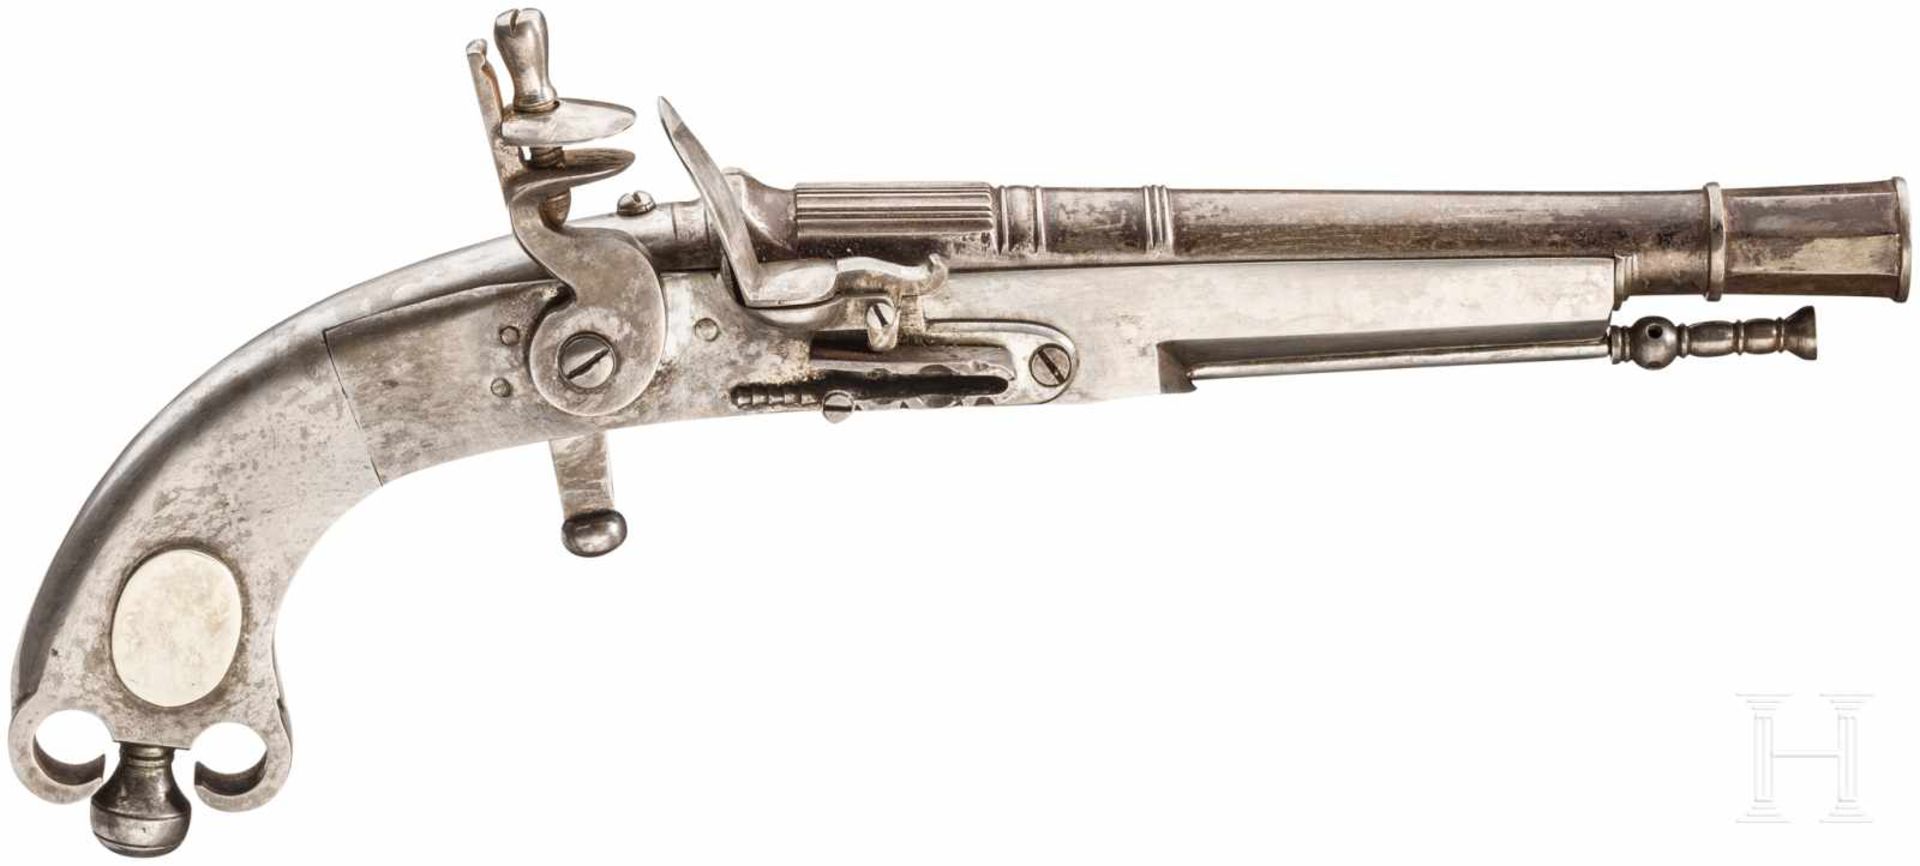 Ganzmetall-Steinschlosspistole, Replika im schottischen Stil des 18. Jhdts.Glatter, über der